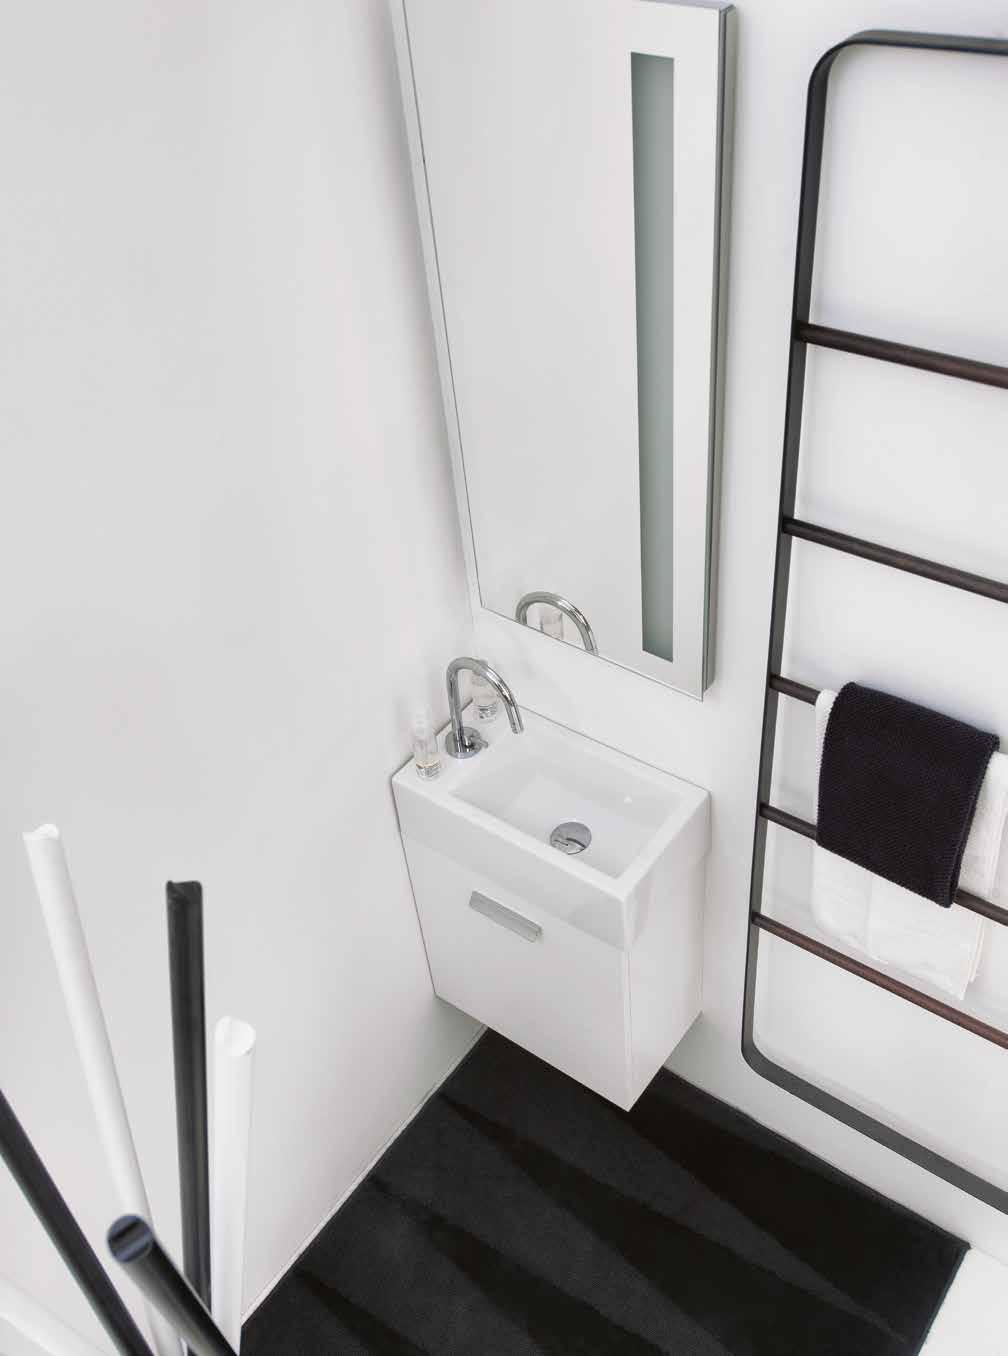 MINI LAVABI Design Team Colavene BATH 01 02 01 Mini lavabo con mobile sospeso cm 45x25x61h pag.